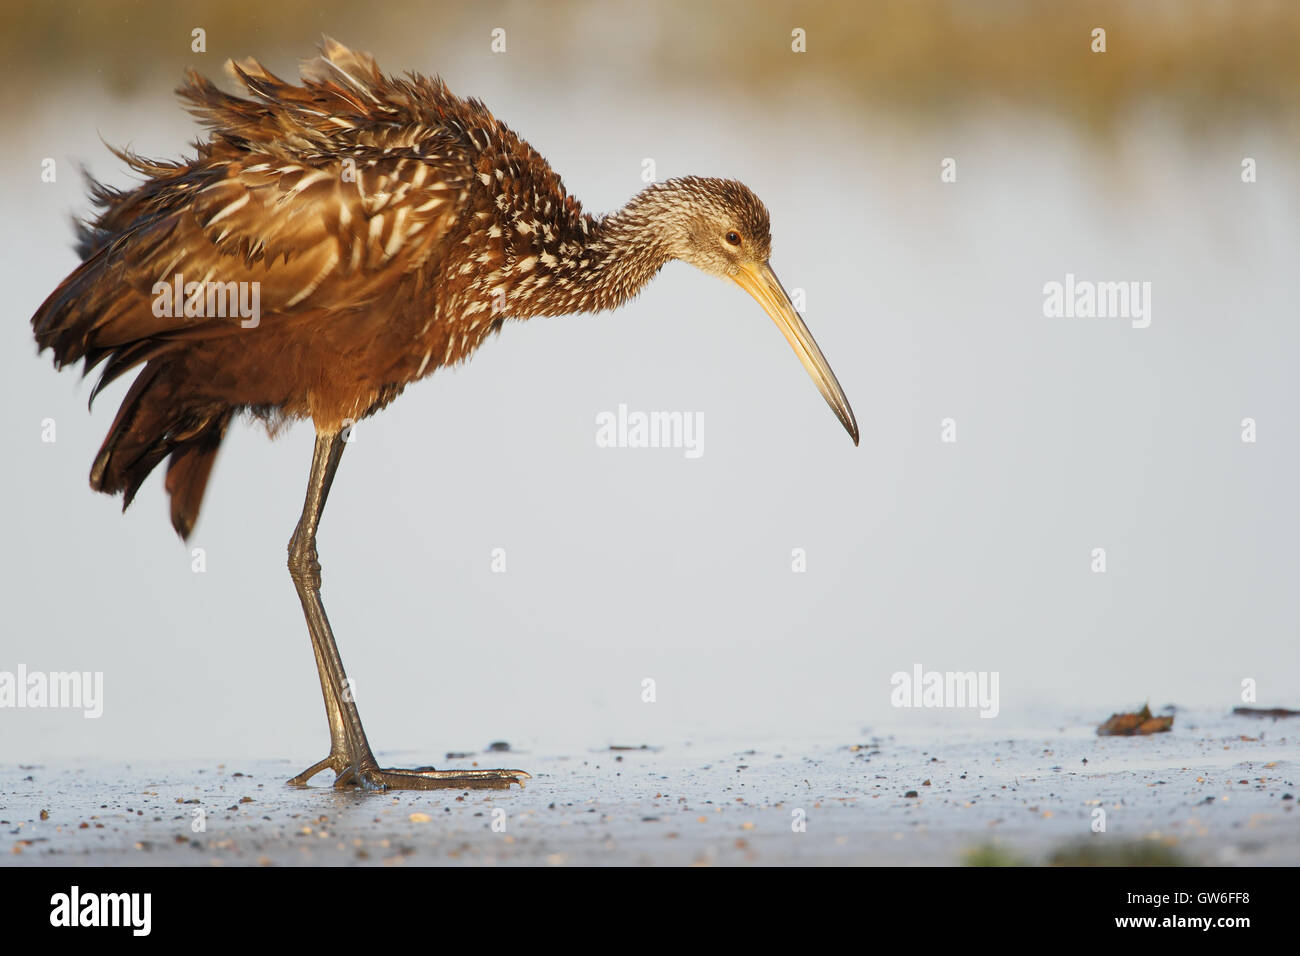 Limpkin (Aramus guarauna) standing at waterfront shaking feathers, Cypress Lake, Florida, USA Stock Photo